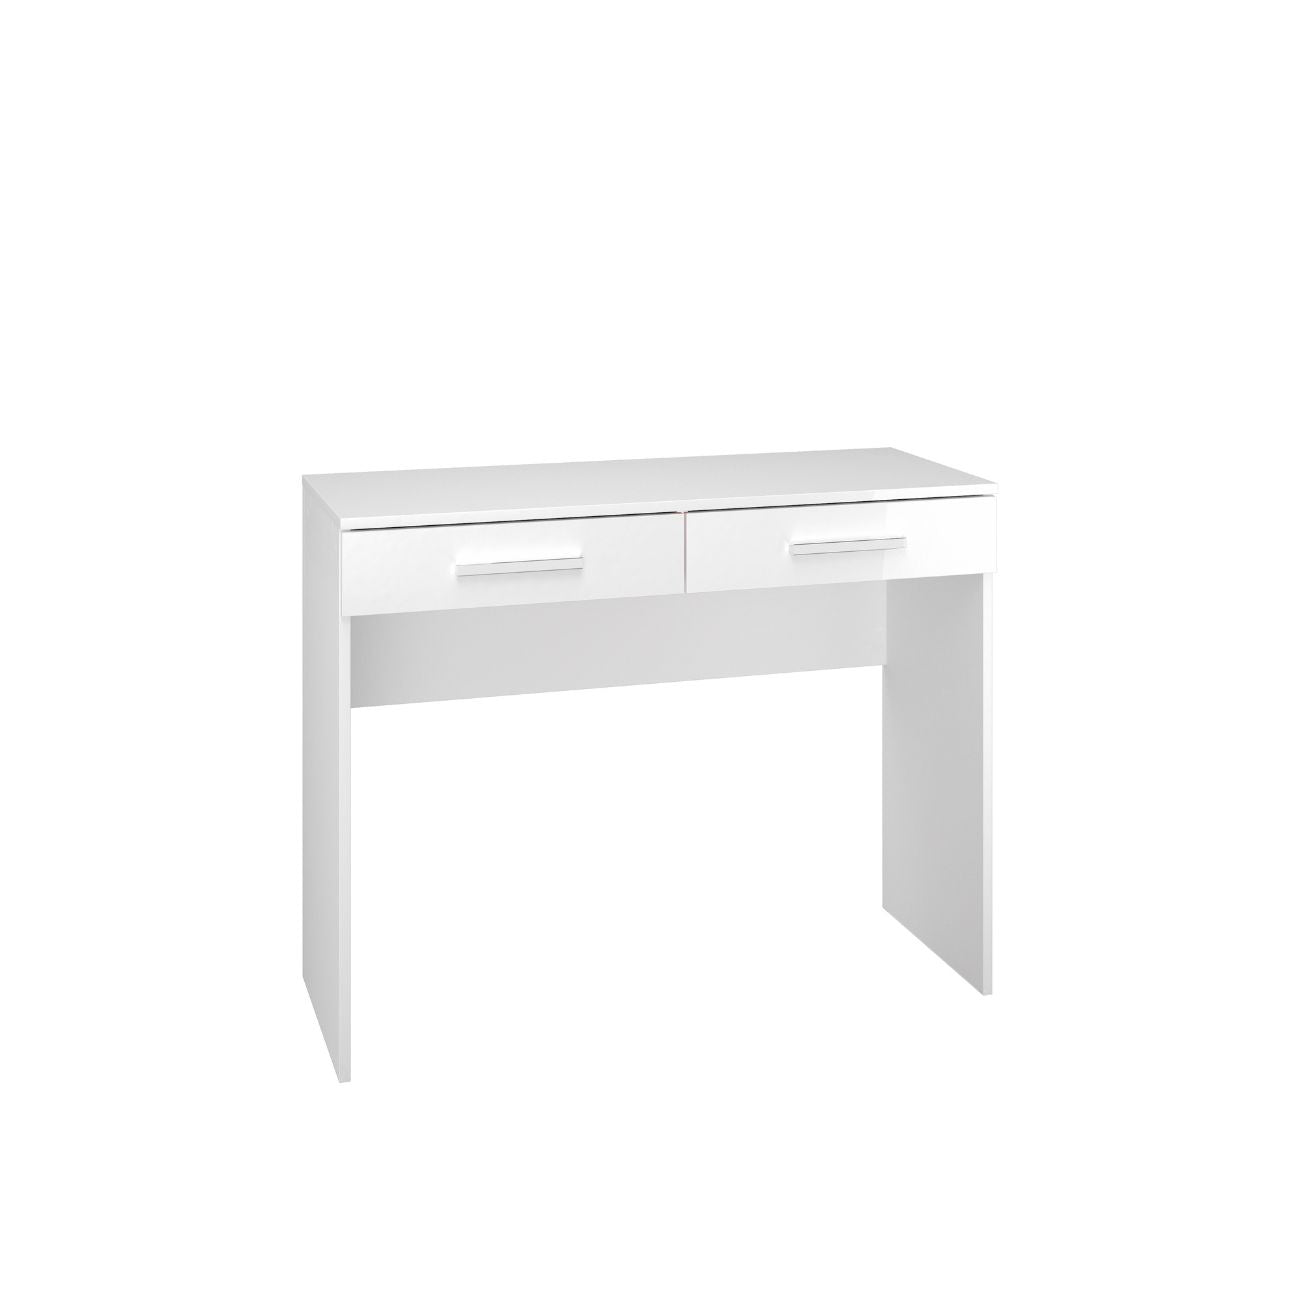 Zdjęcie przedstawiające nowoczesne biurko z dwiema szufladami. Nowoczesne białe biurko do pokoju młodzieżowego, biura lub toaletka do sypialni dostępna na DMSM.pl